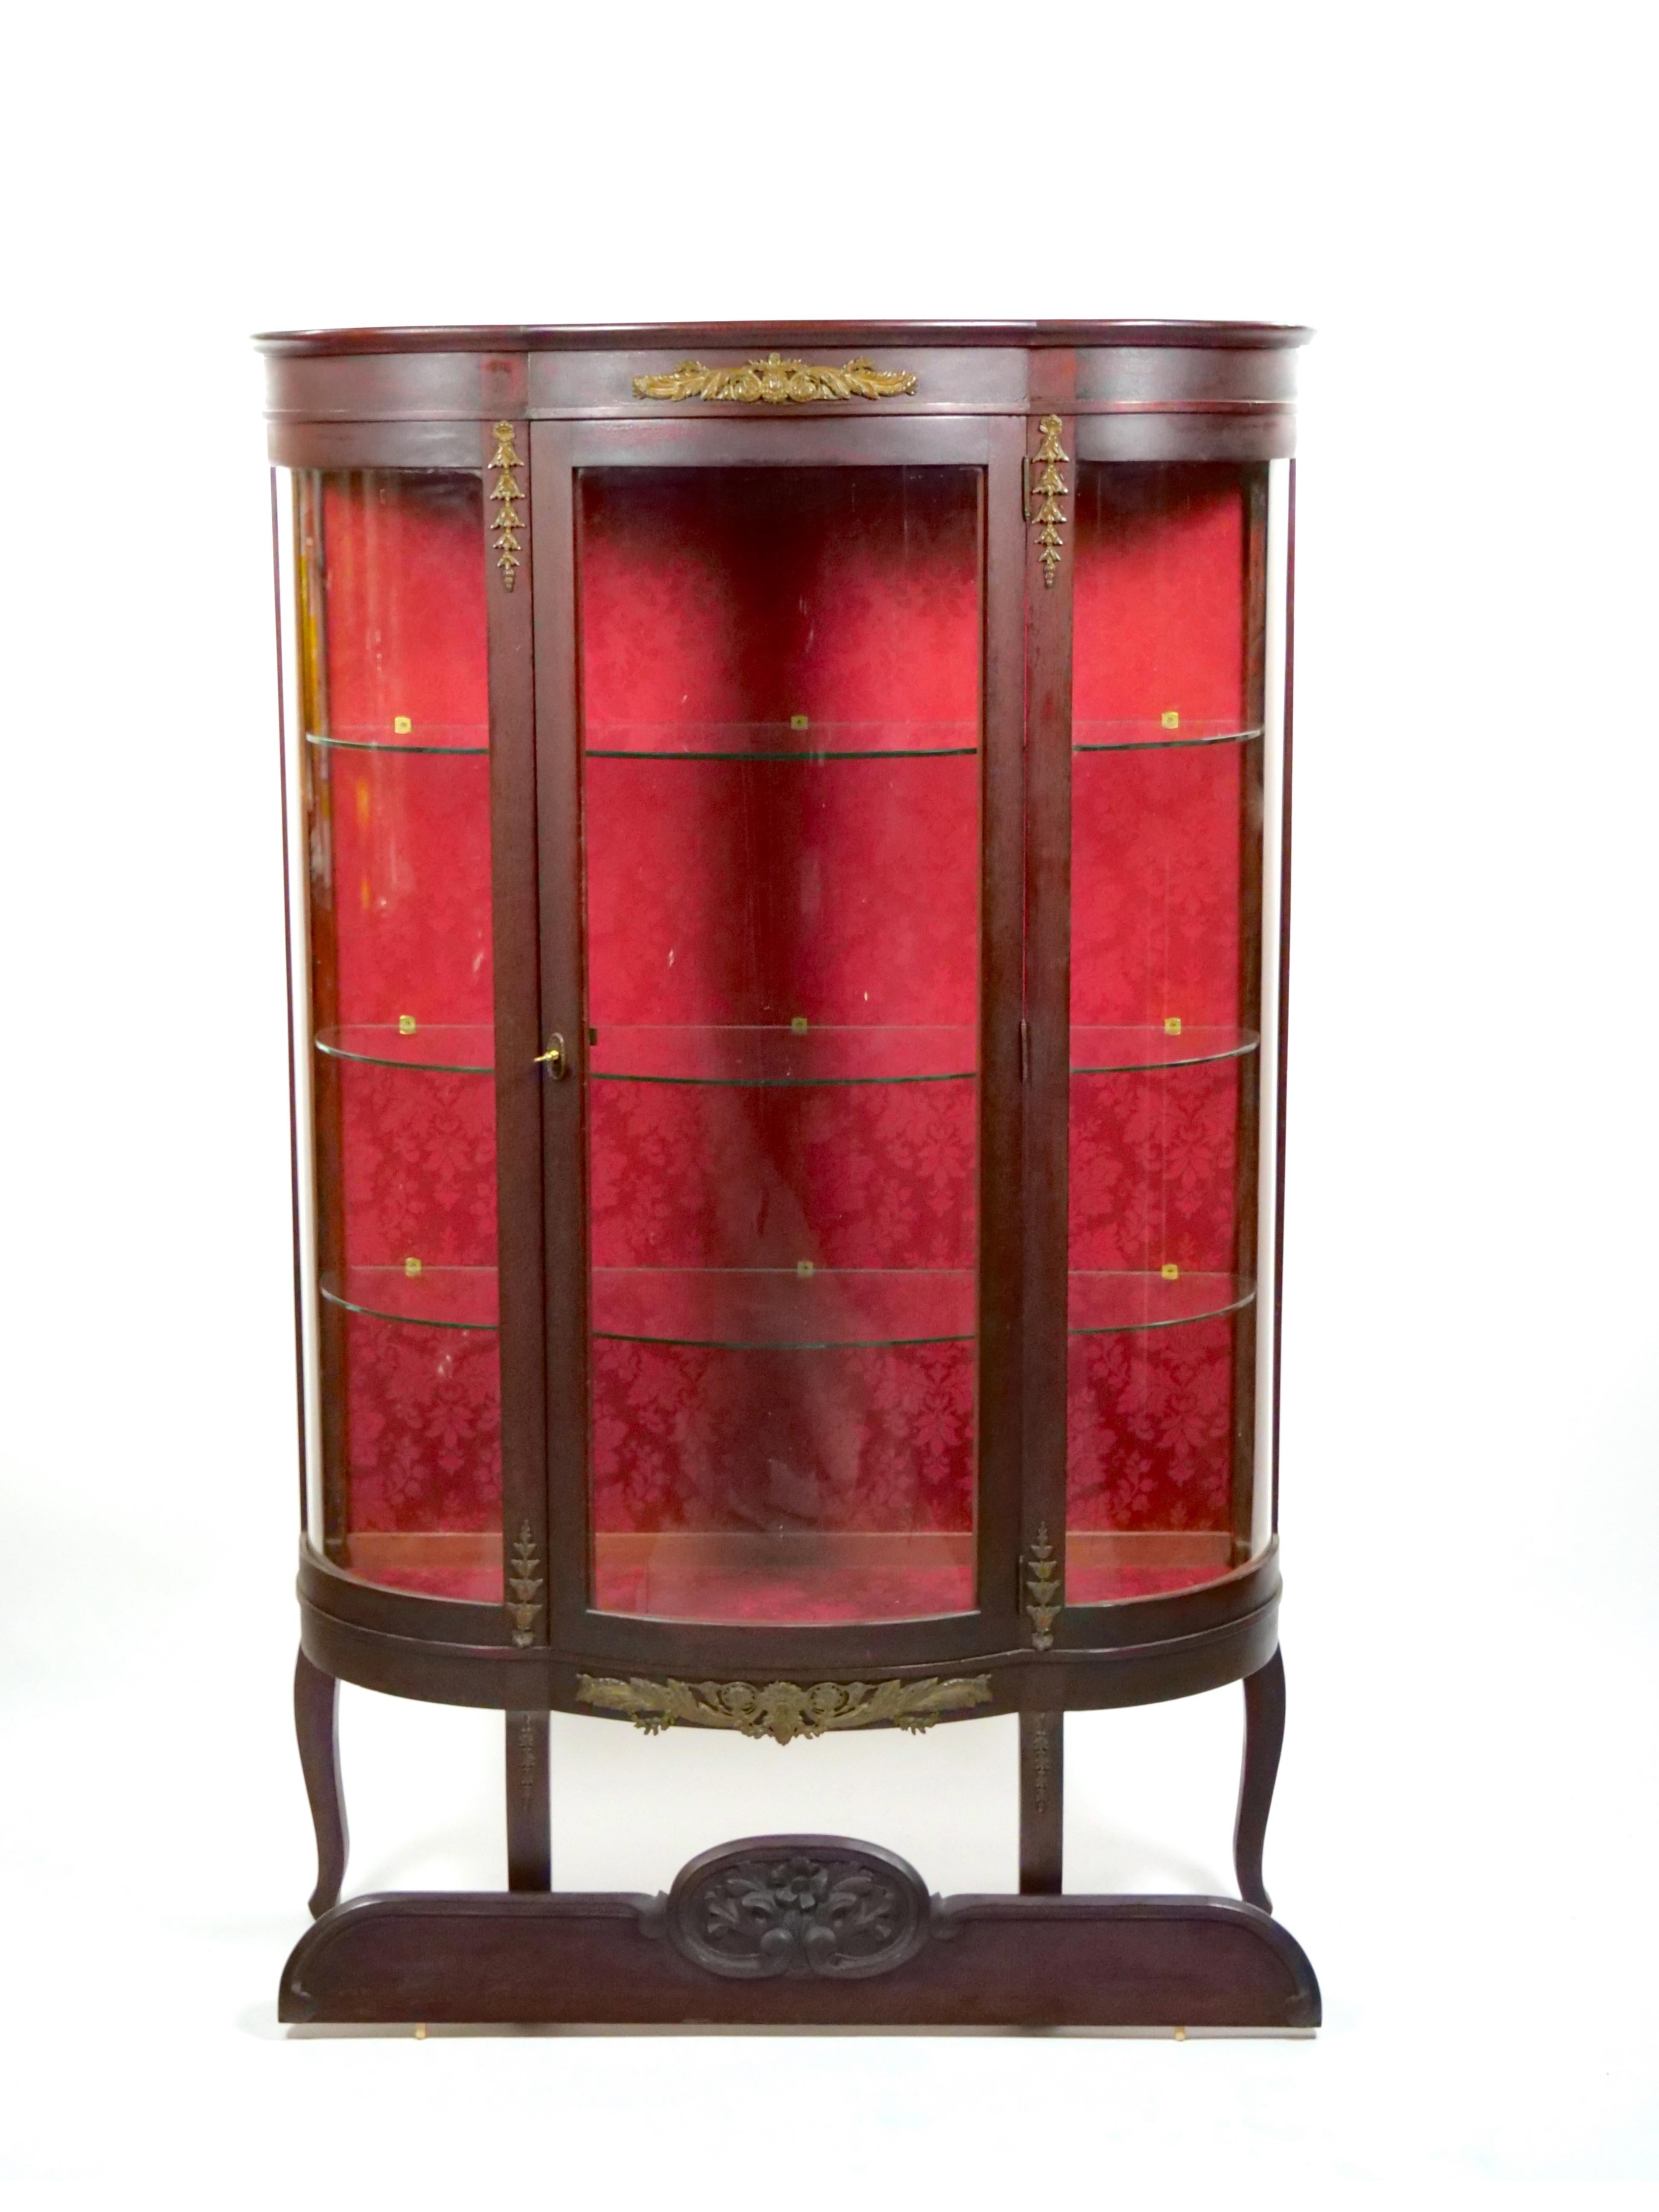 
Embrassez l'allure intemporelle de notre vitrine et vaisselier antique en forme de demilune, magnifiquement finis dans une teinte rouge chaude et accueillante. Cette pièce exquise présente une multitude de détails complexes, depuis les gracieux